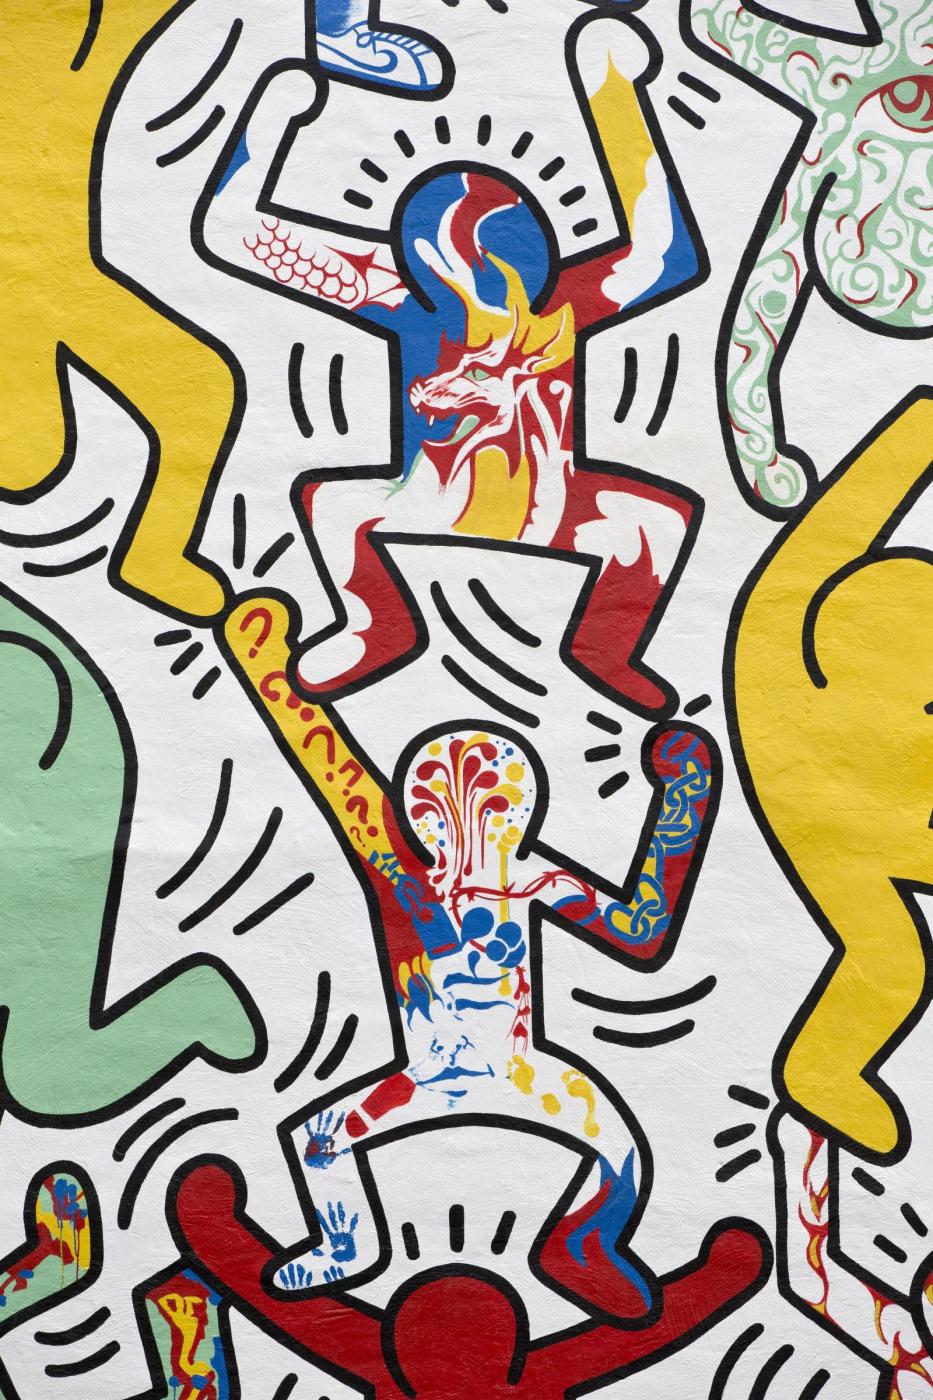 Restaurato il murales di Keith Haring a Philadelphia